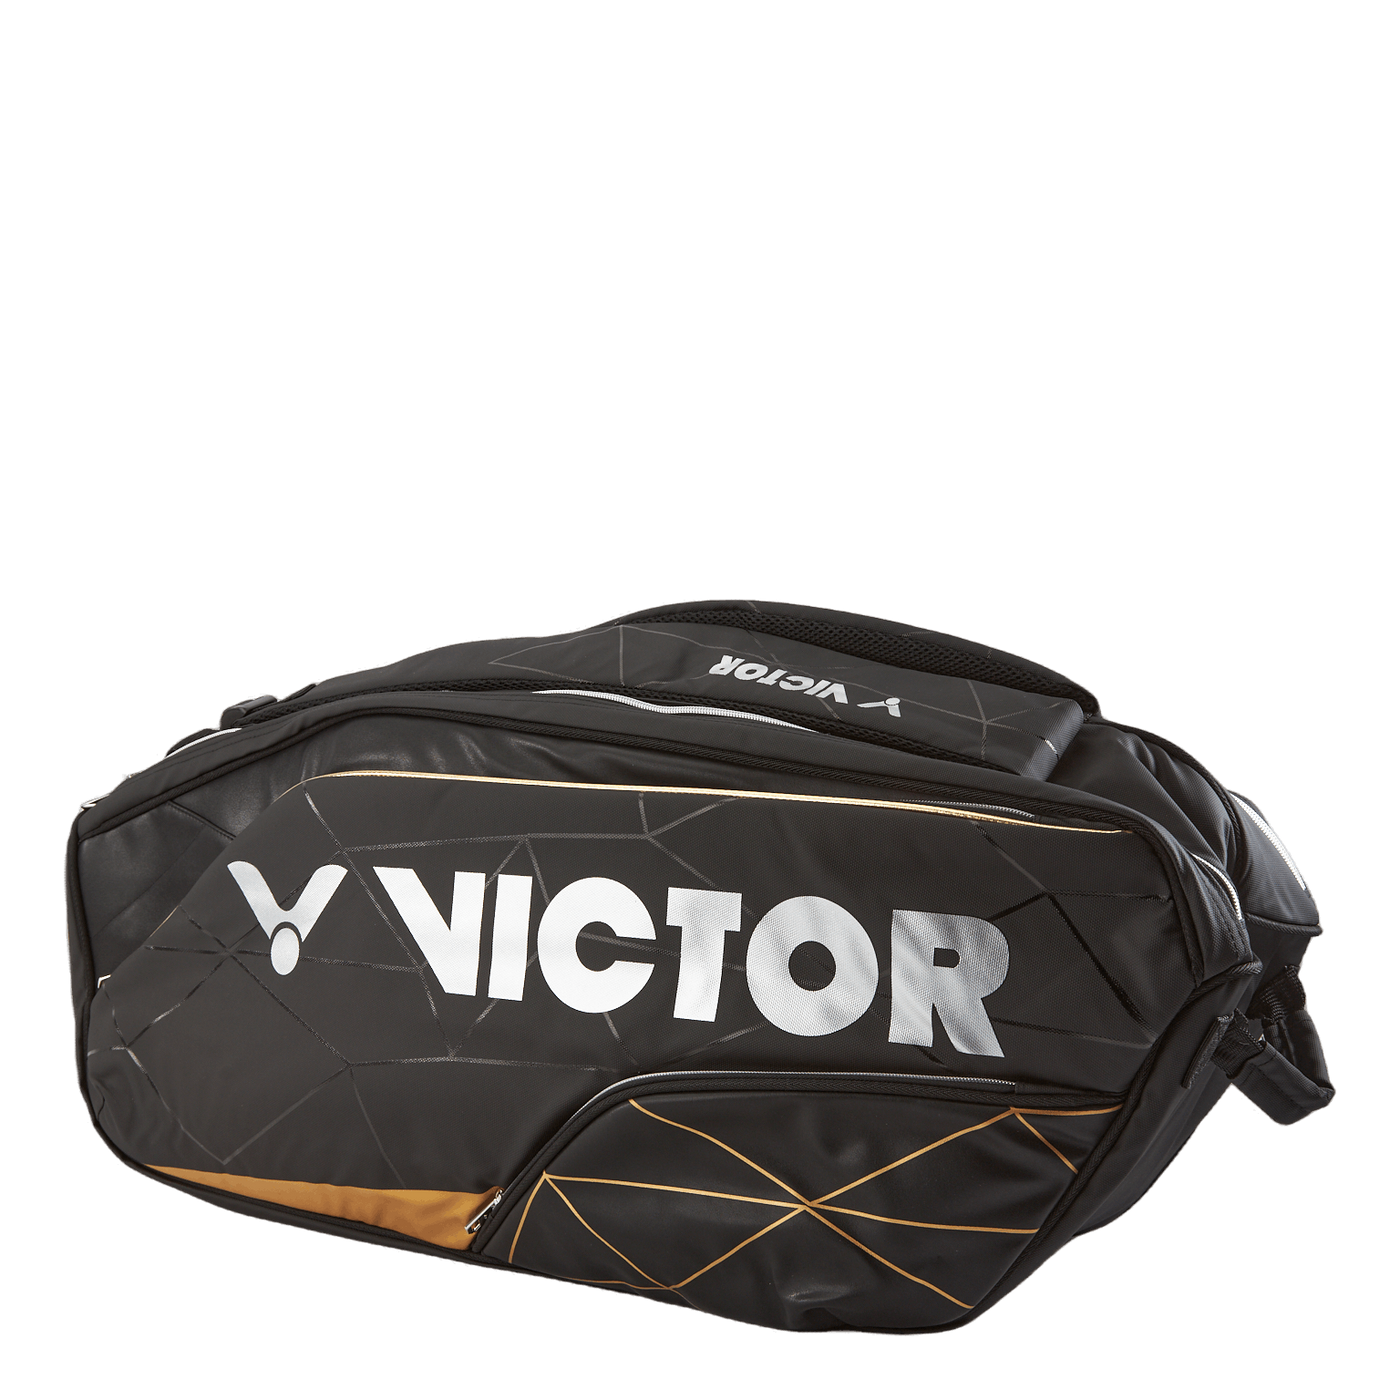 Victor br9211 black